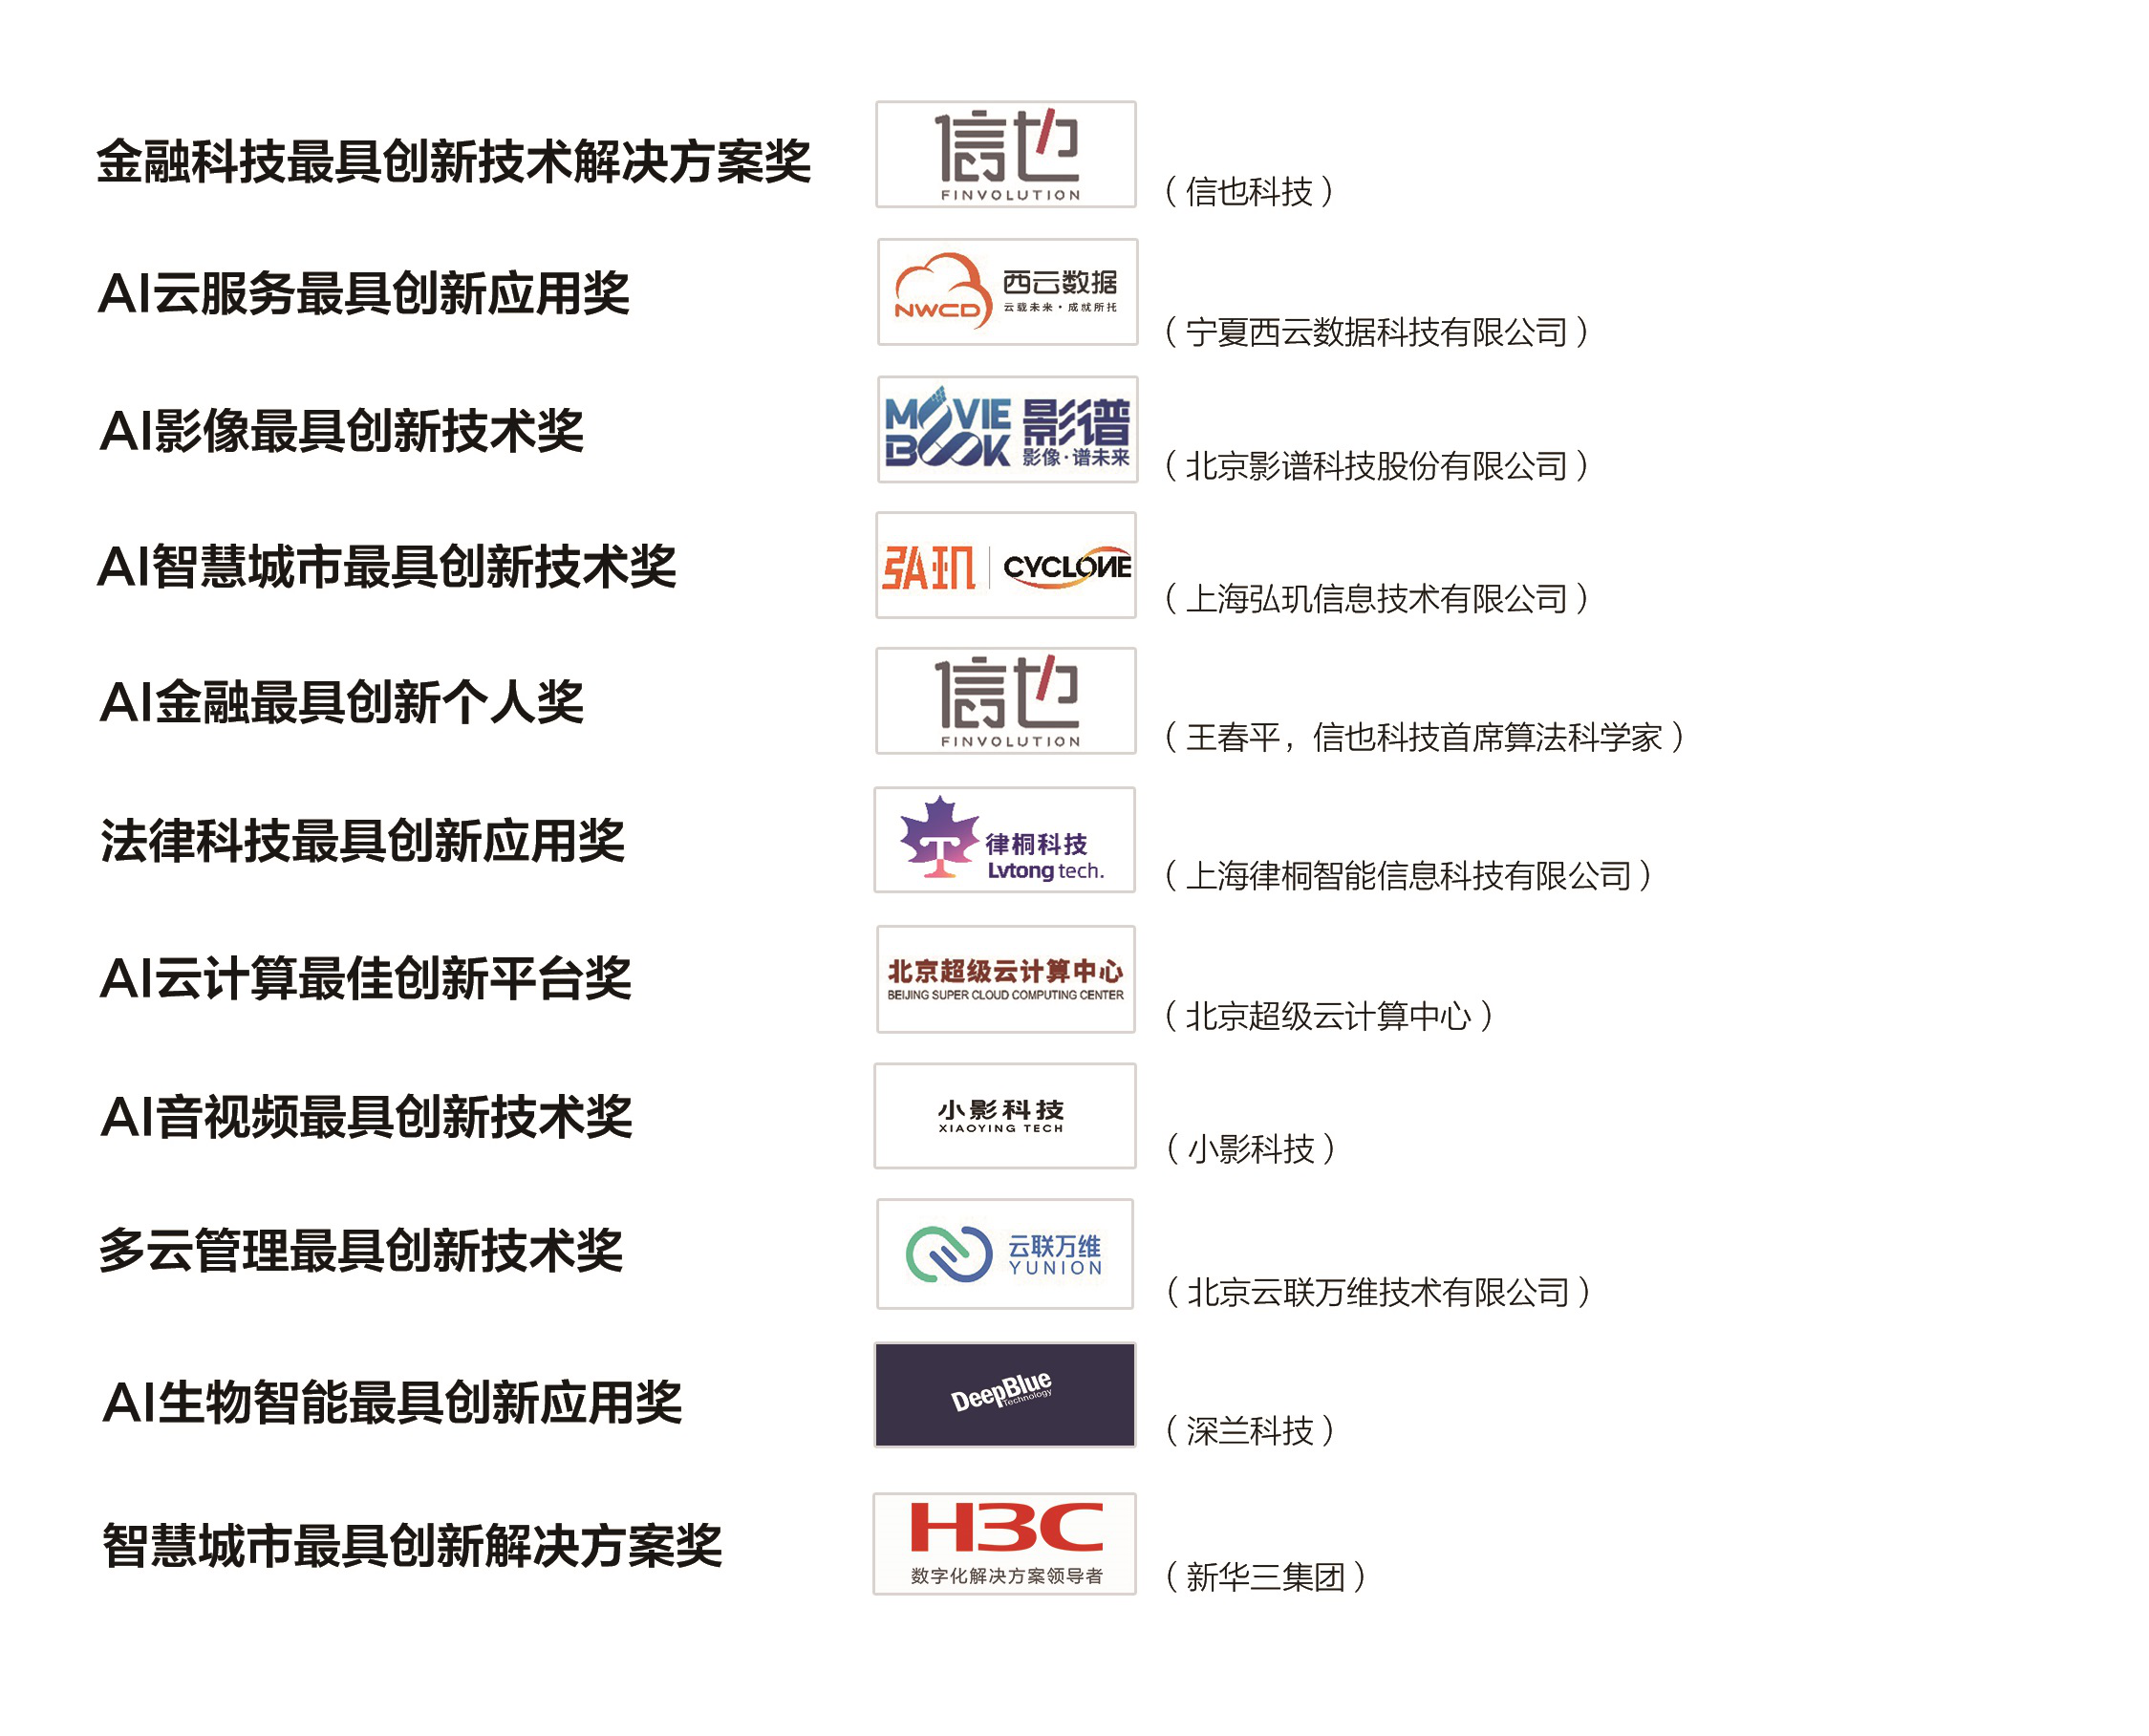 2020上海人工智能大会  暨第三届图像、视频处理与人工智能国际会议  在上海浦东隆重召开